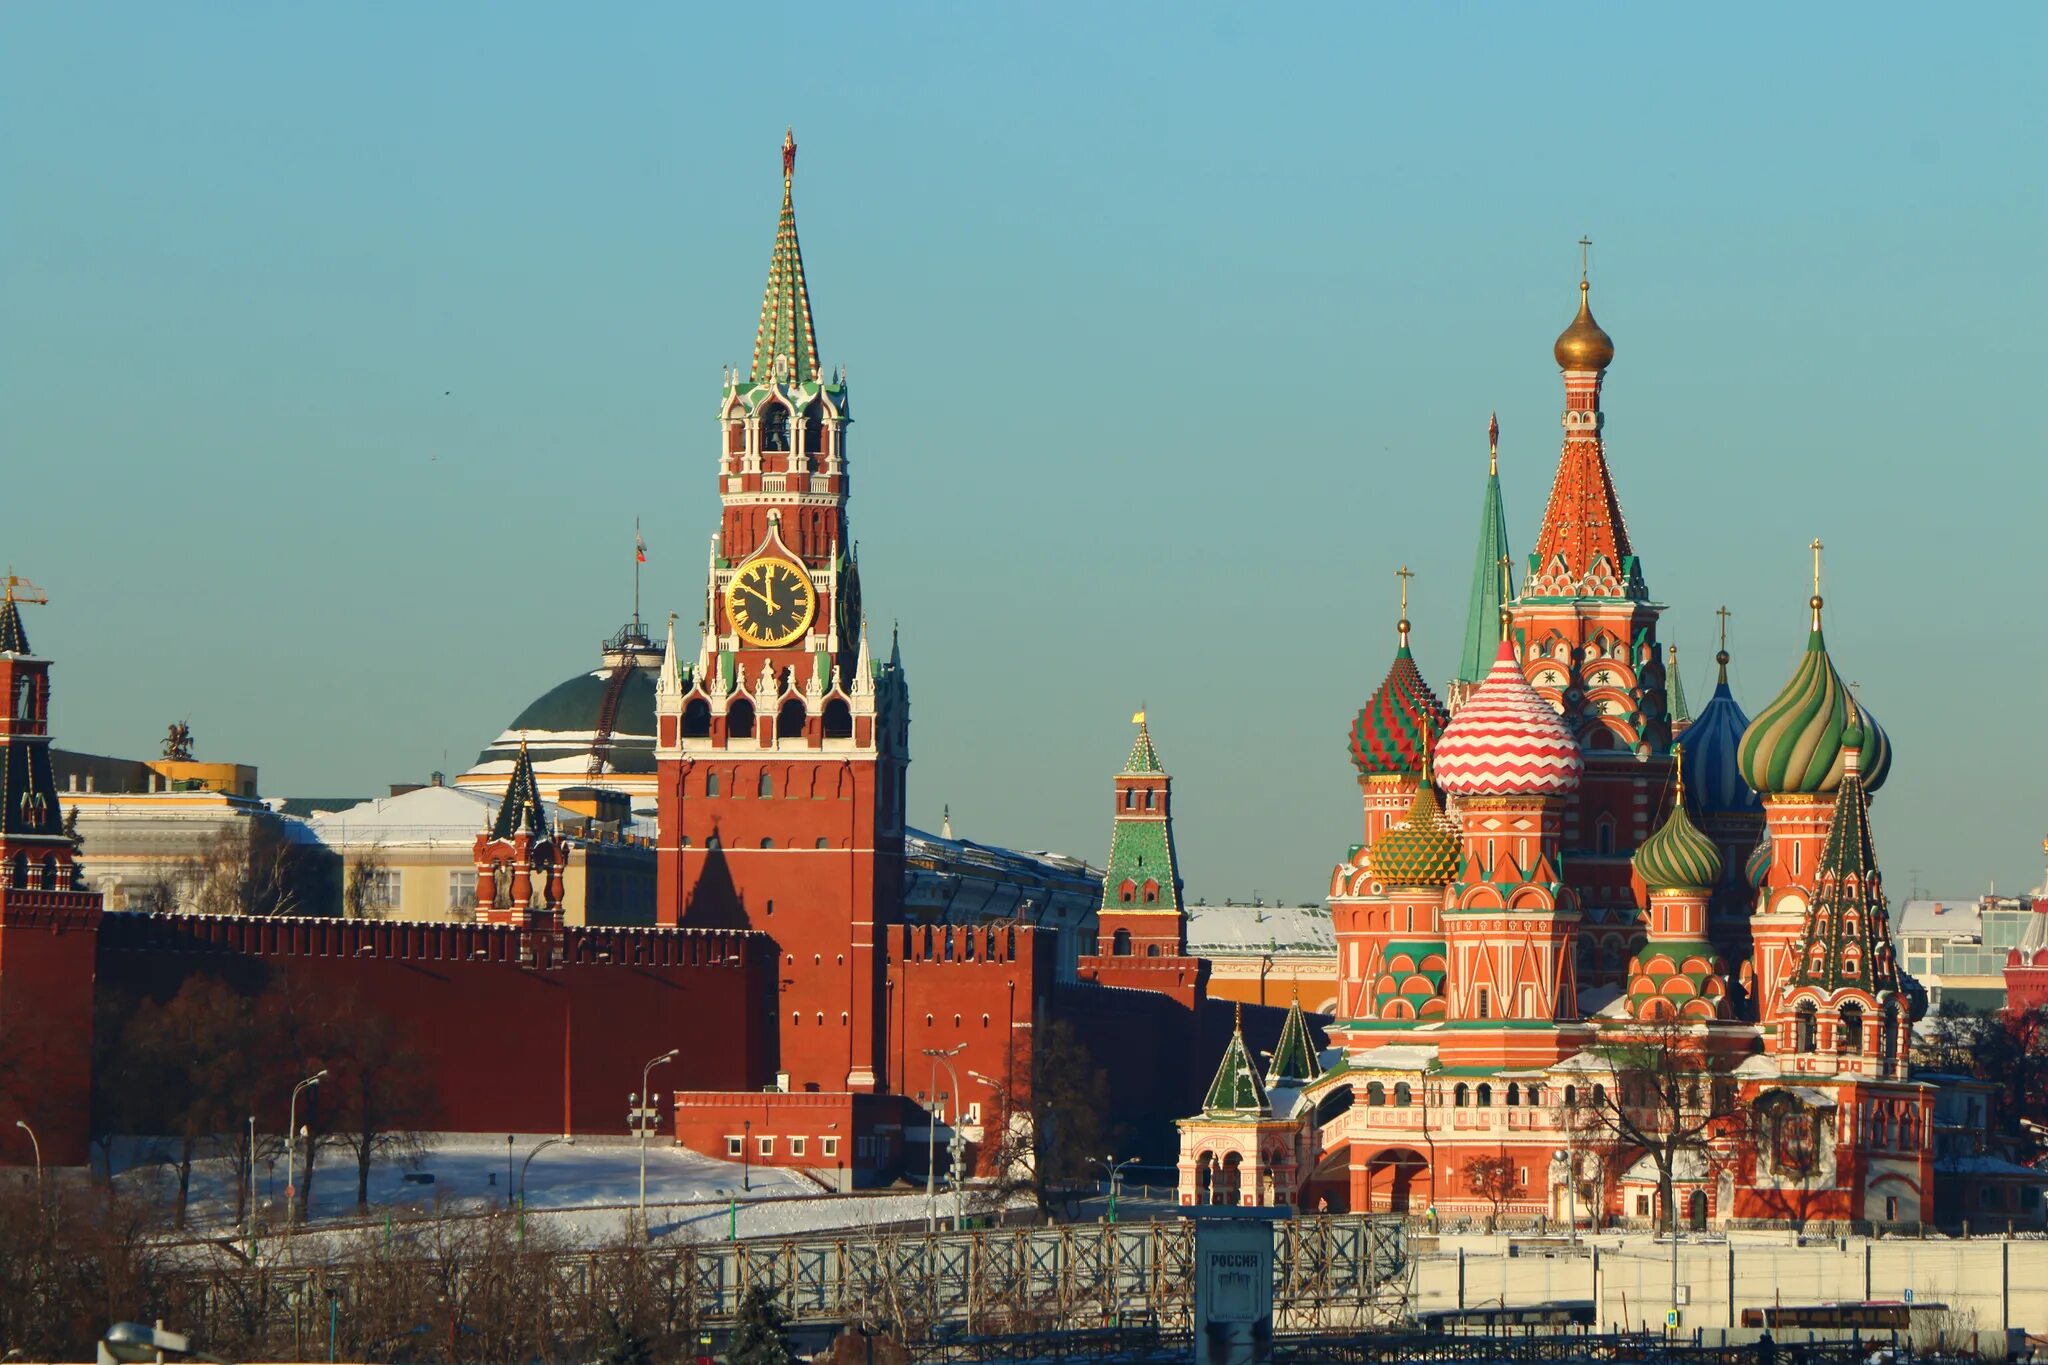 Кремль и красная площадь и храм Василия Блаженного. Кремль kremlin